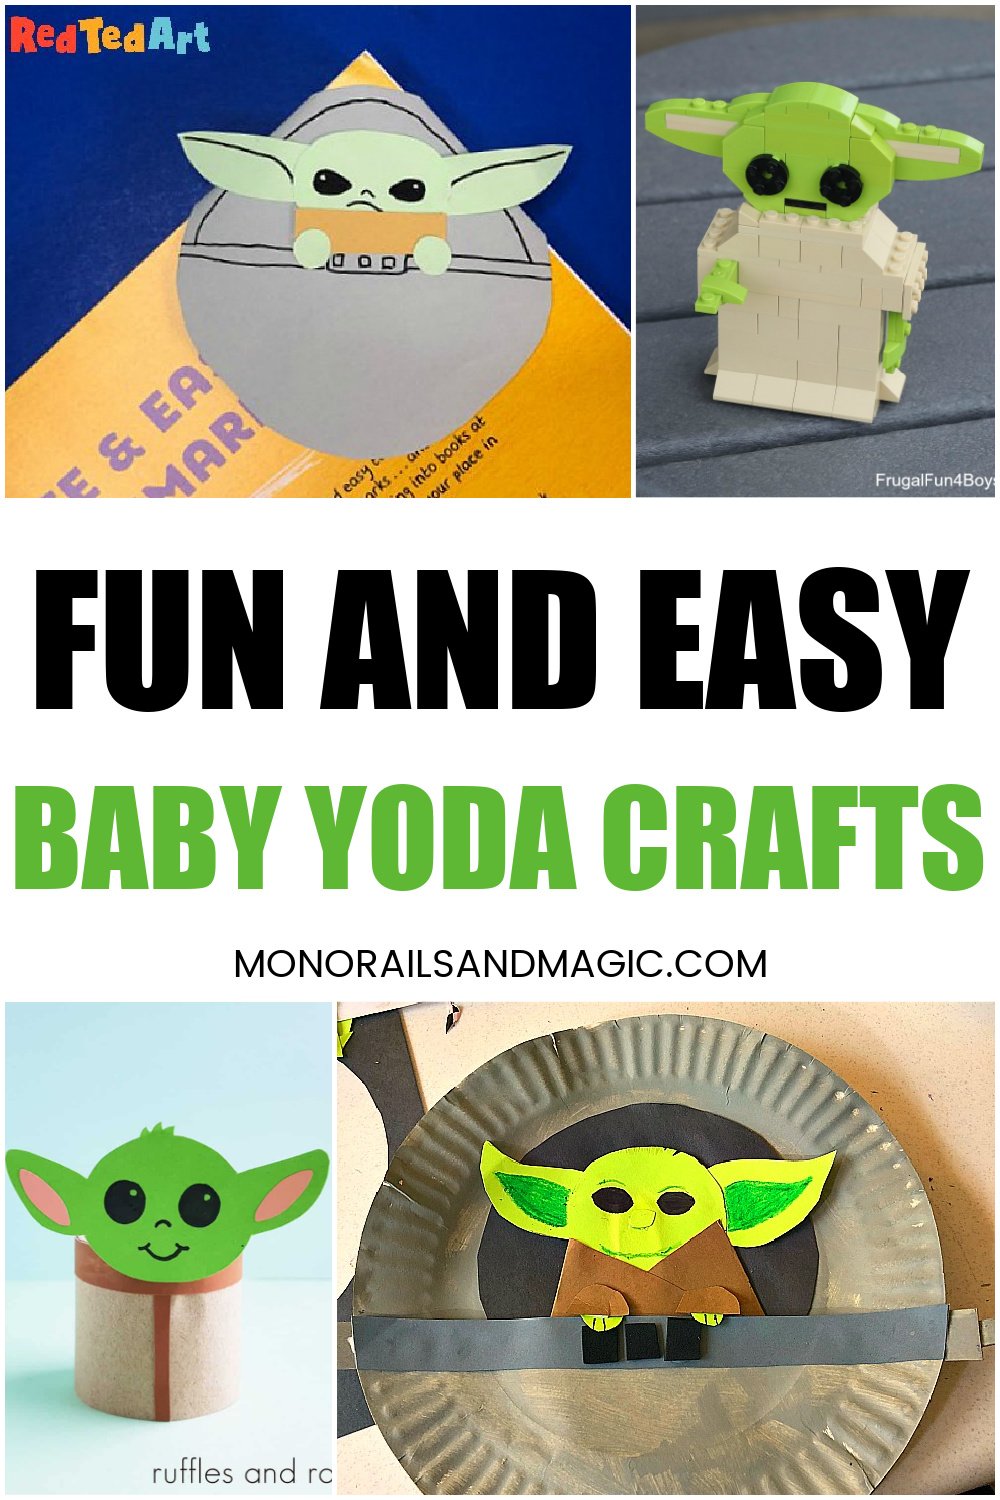 Fun Baby Yoda crafts.